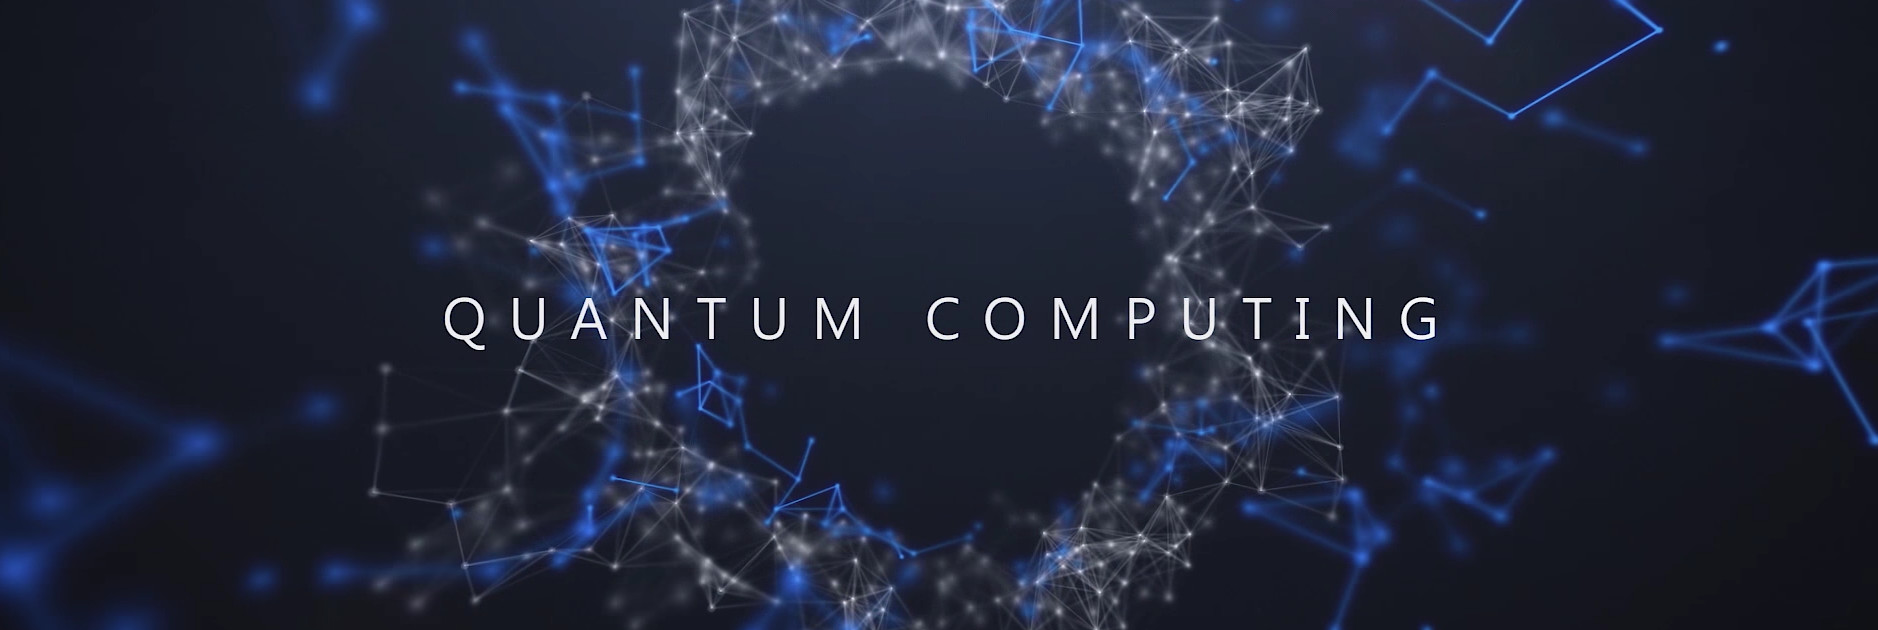 Quantum Computing Pros and Cons